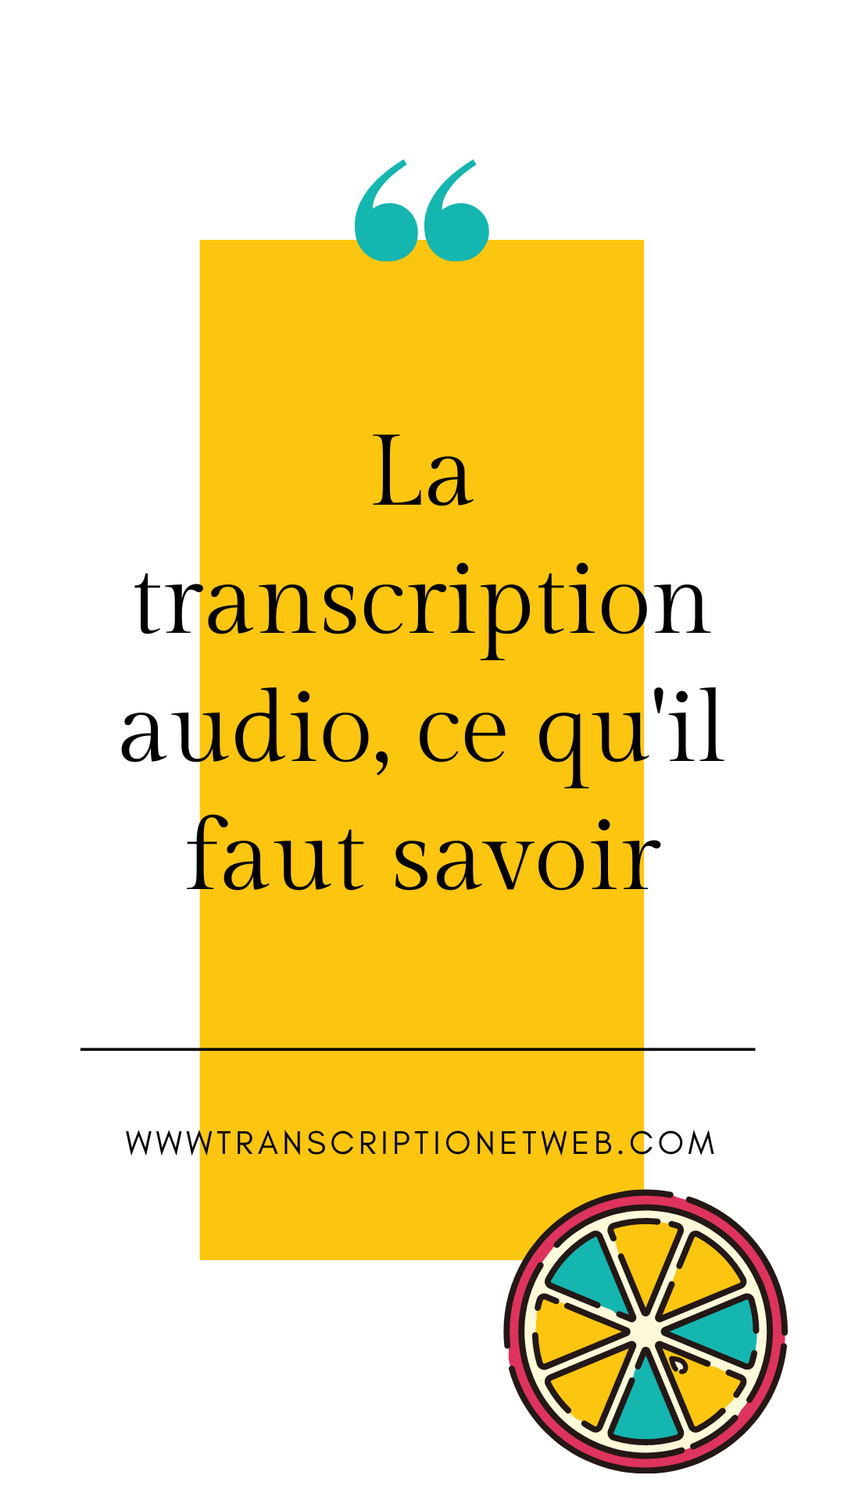 La transcription audio, ce qu'il faut savoir